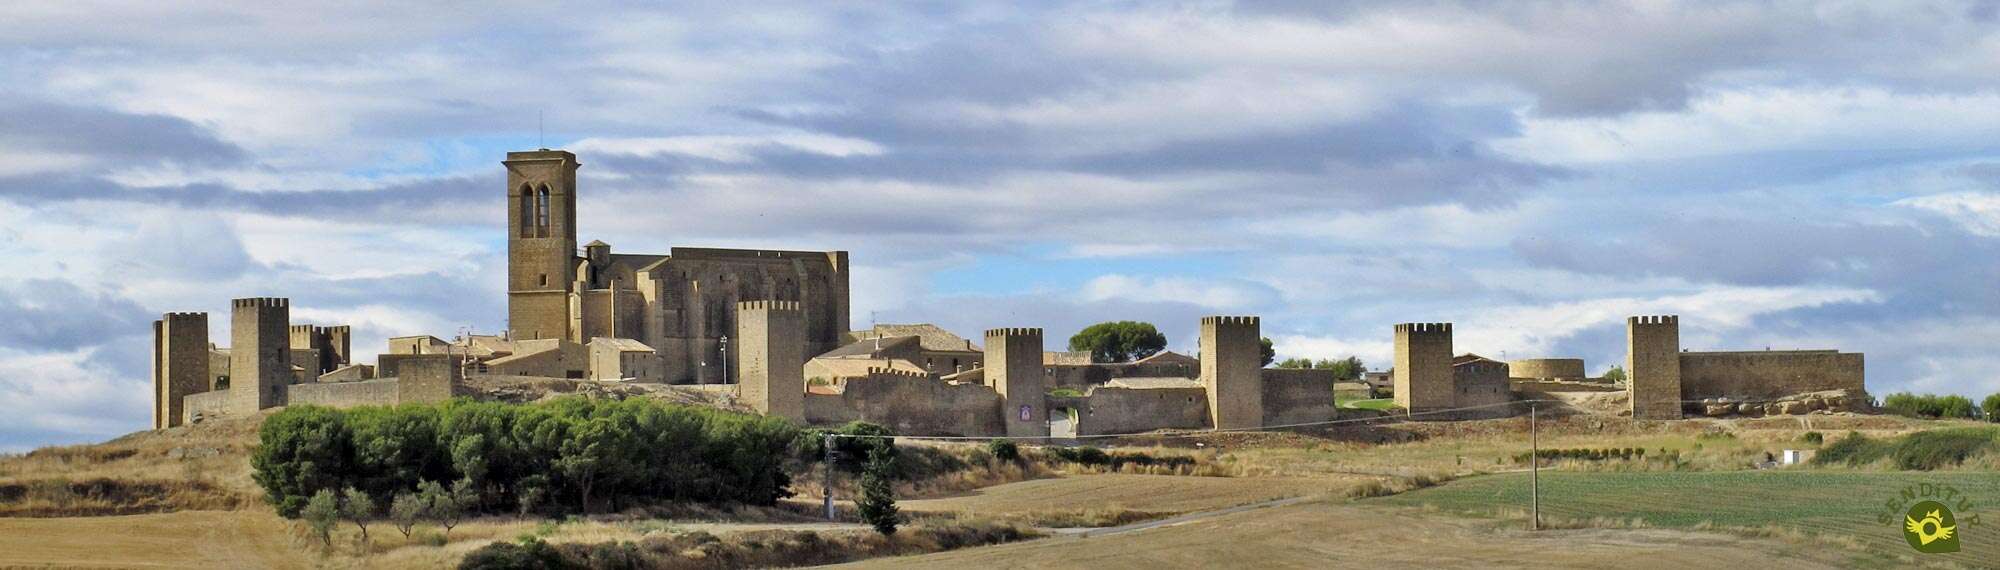 Ruta de los Castillos y Fortalezas de Navarra